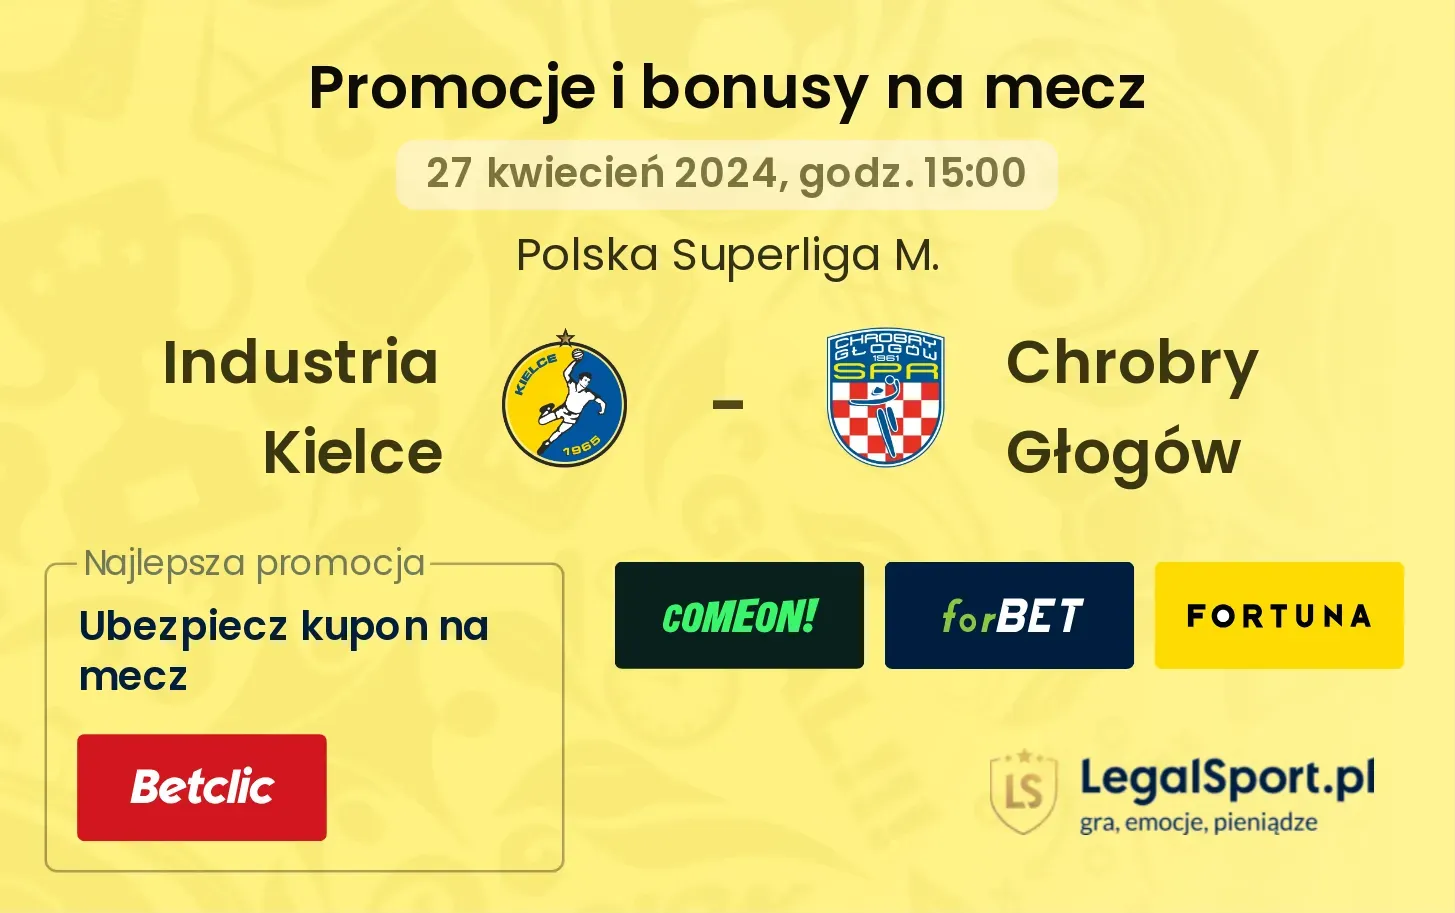 Industria Kielce - Chrobry Głogów promocje bonusy na mecz